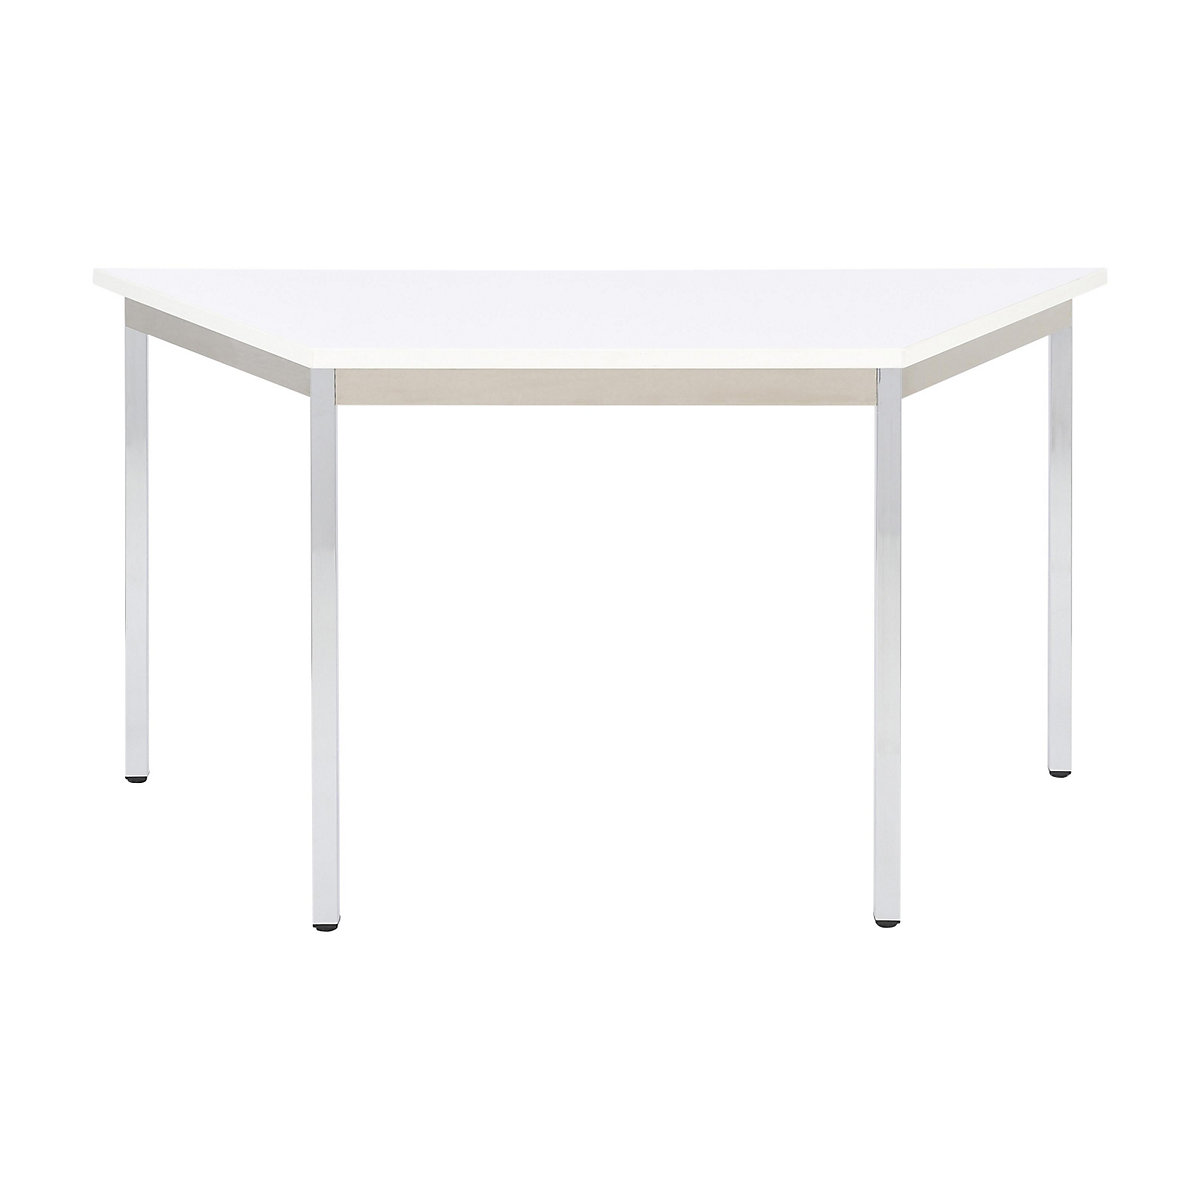 Víceúčelový stůl – eurokraft basic, lichoběžníkový tvar, v x š x h 740 x 1200 x 600 mm, deska bílá, podstavec pochromovaný-18